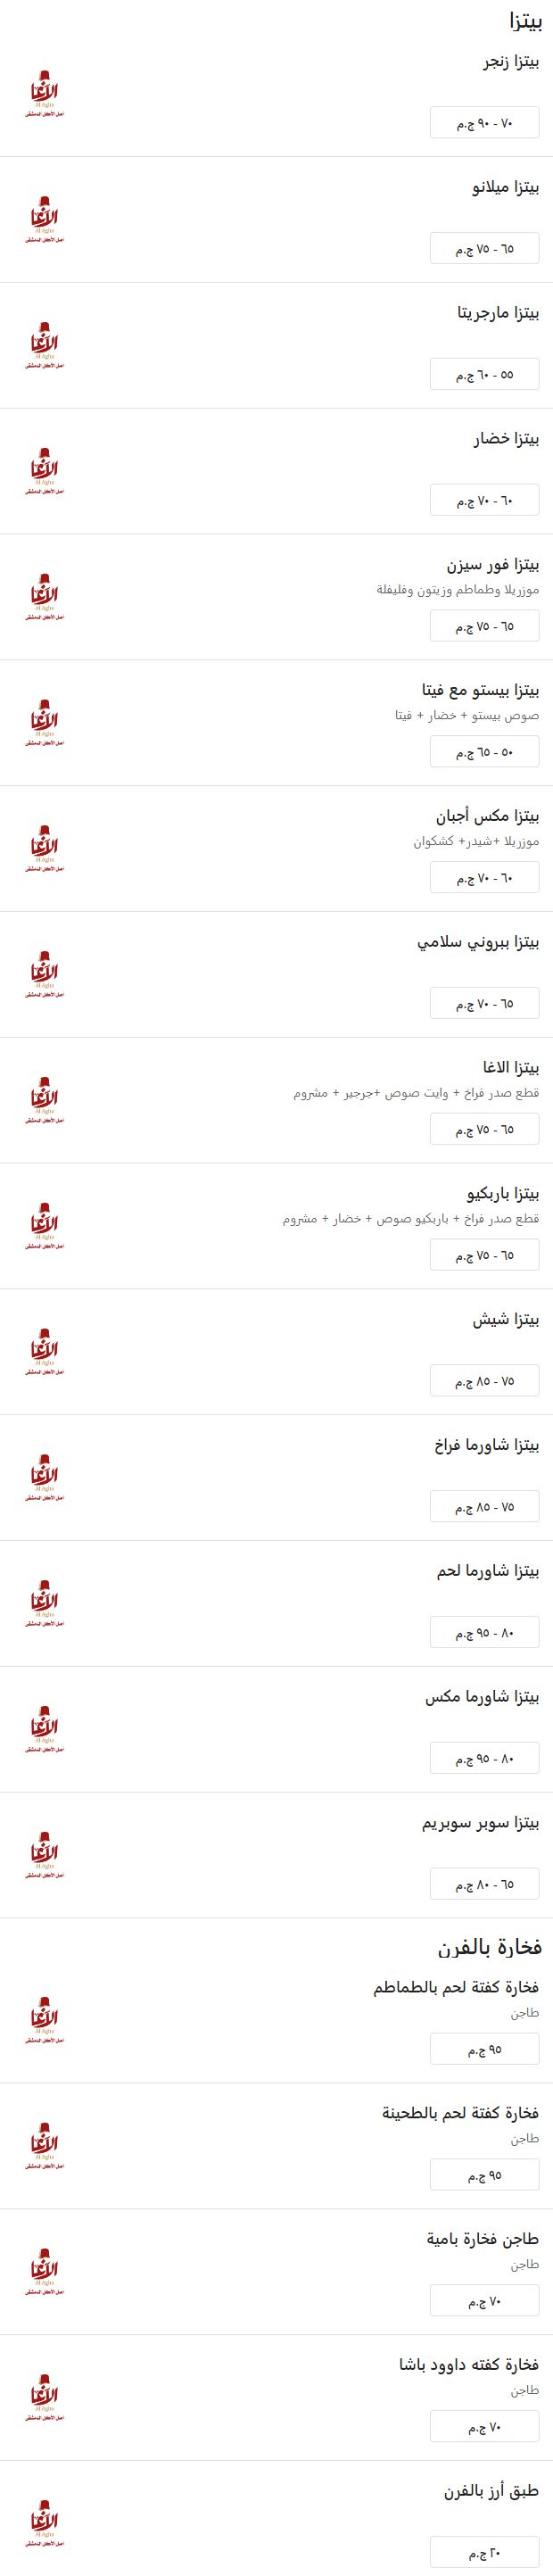 منيو وفروع مطعم «الآغا» في مصر , رقم التوصيل والدليفري